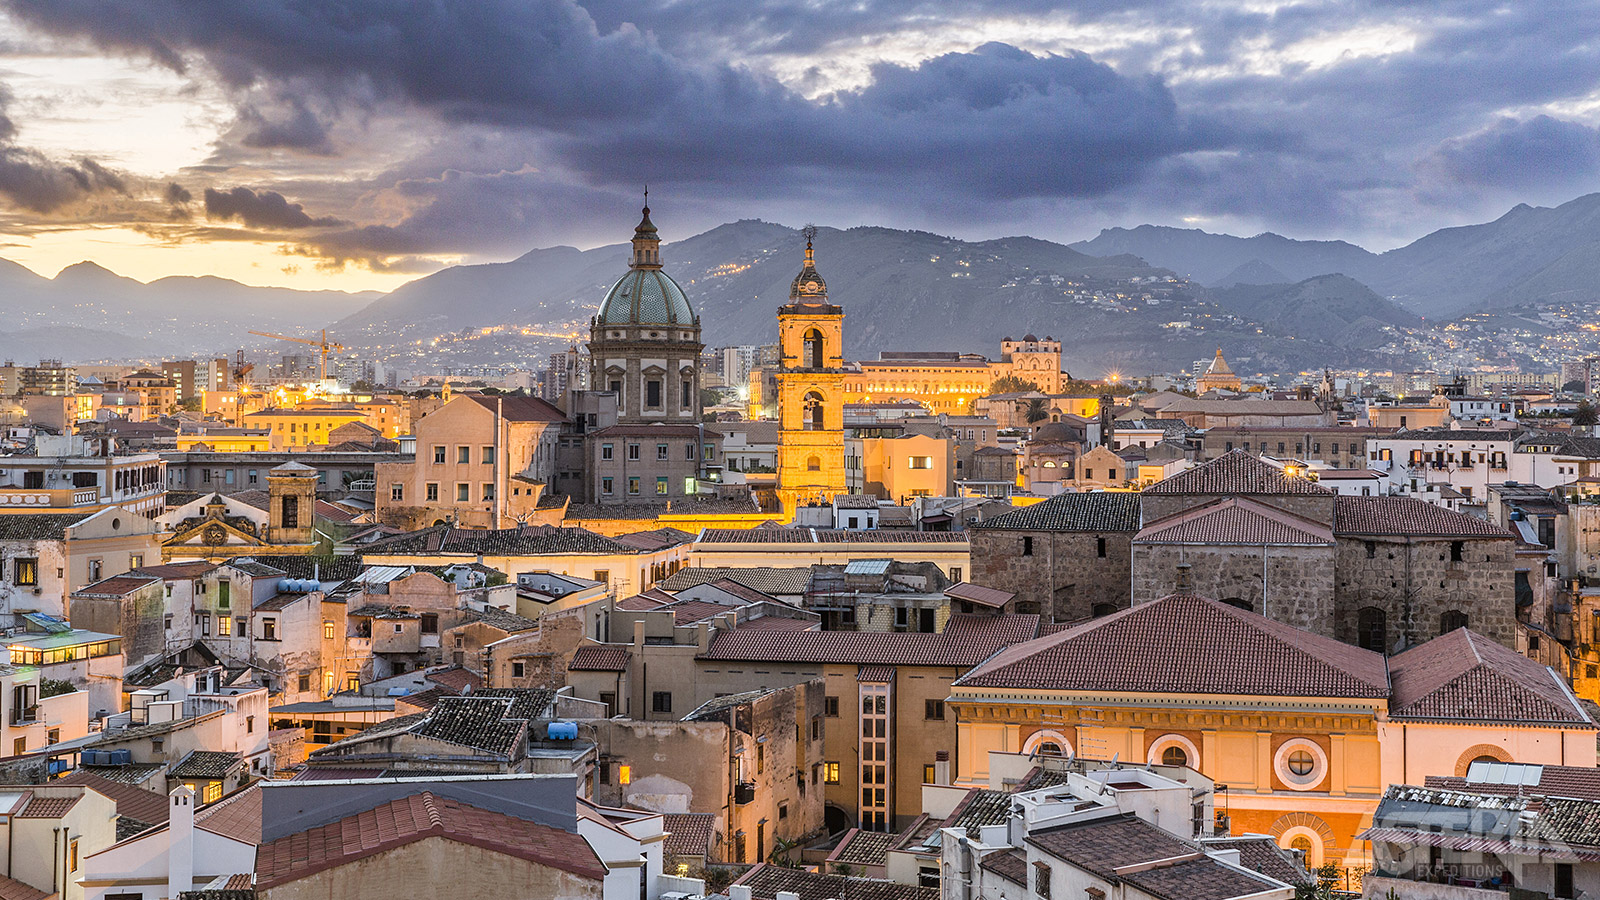 De oorsprong van de stad Palermo gaat terug tot de tijd van de Fenicische kolonisatie in de 7de eeuw voor Christus